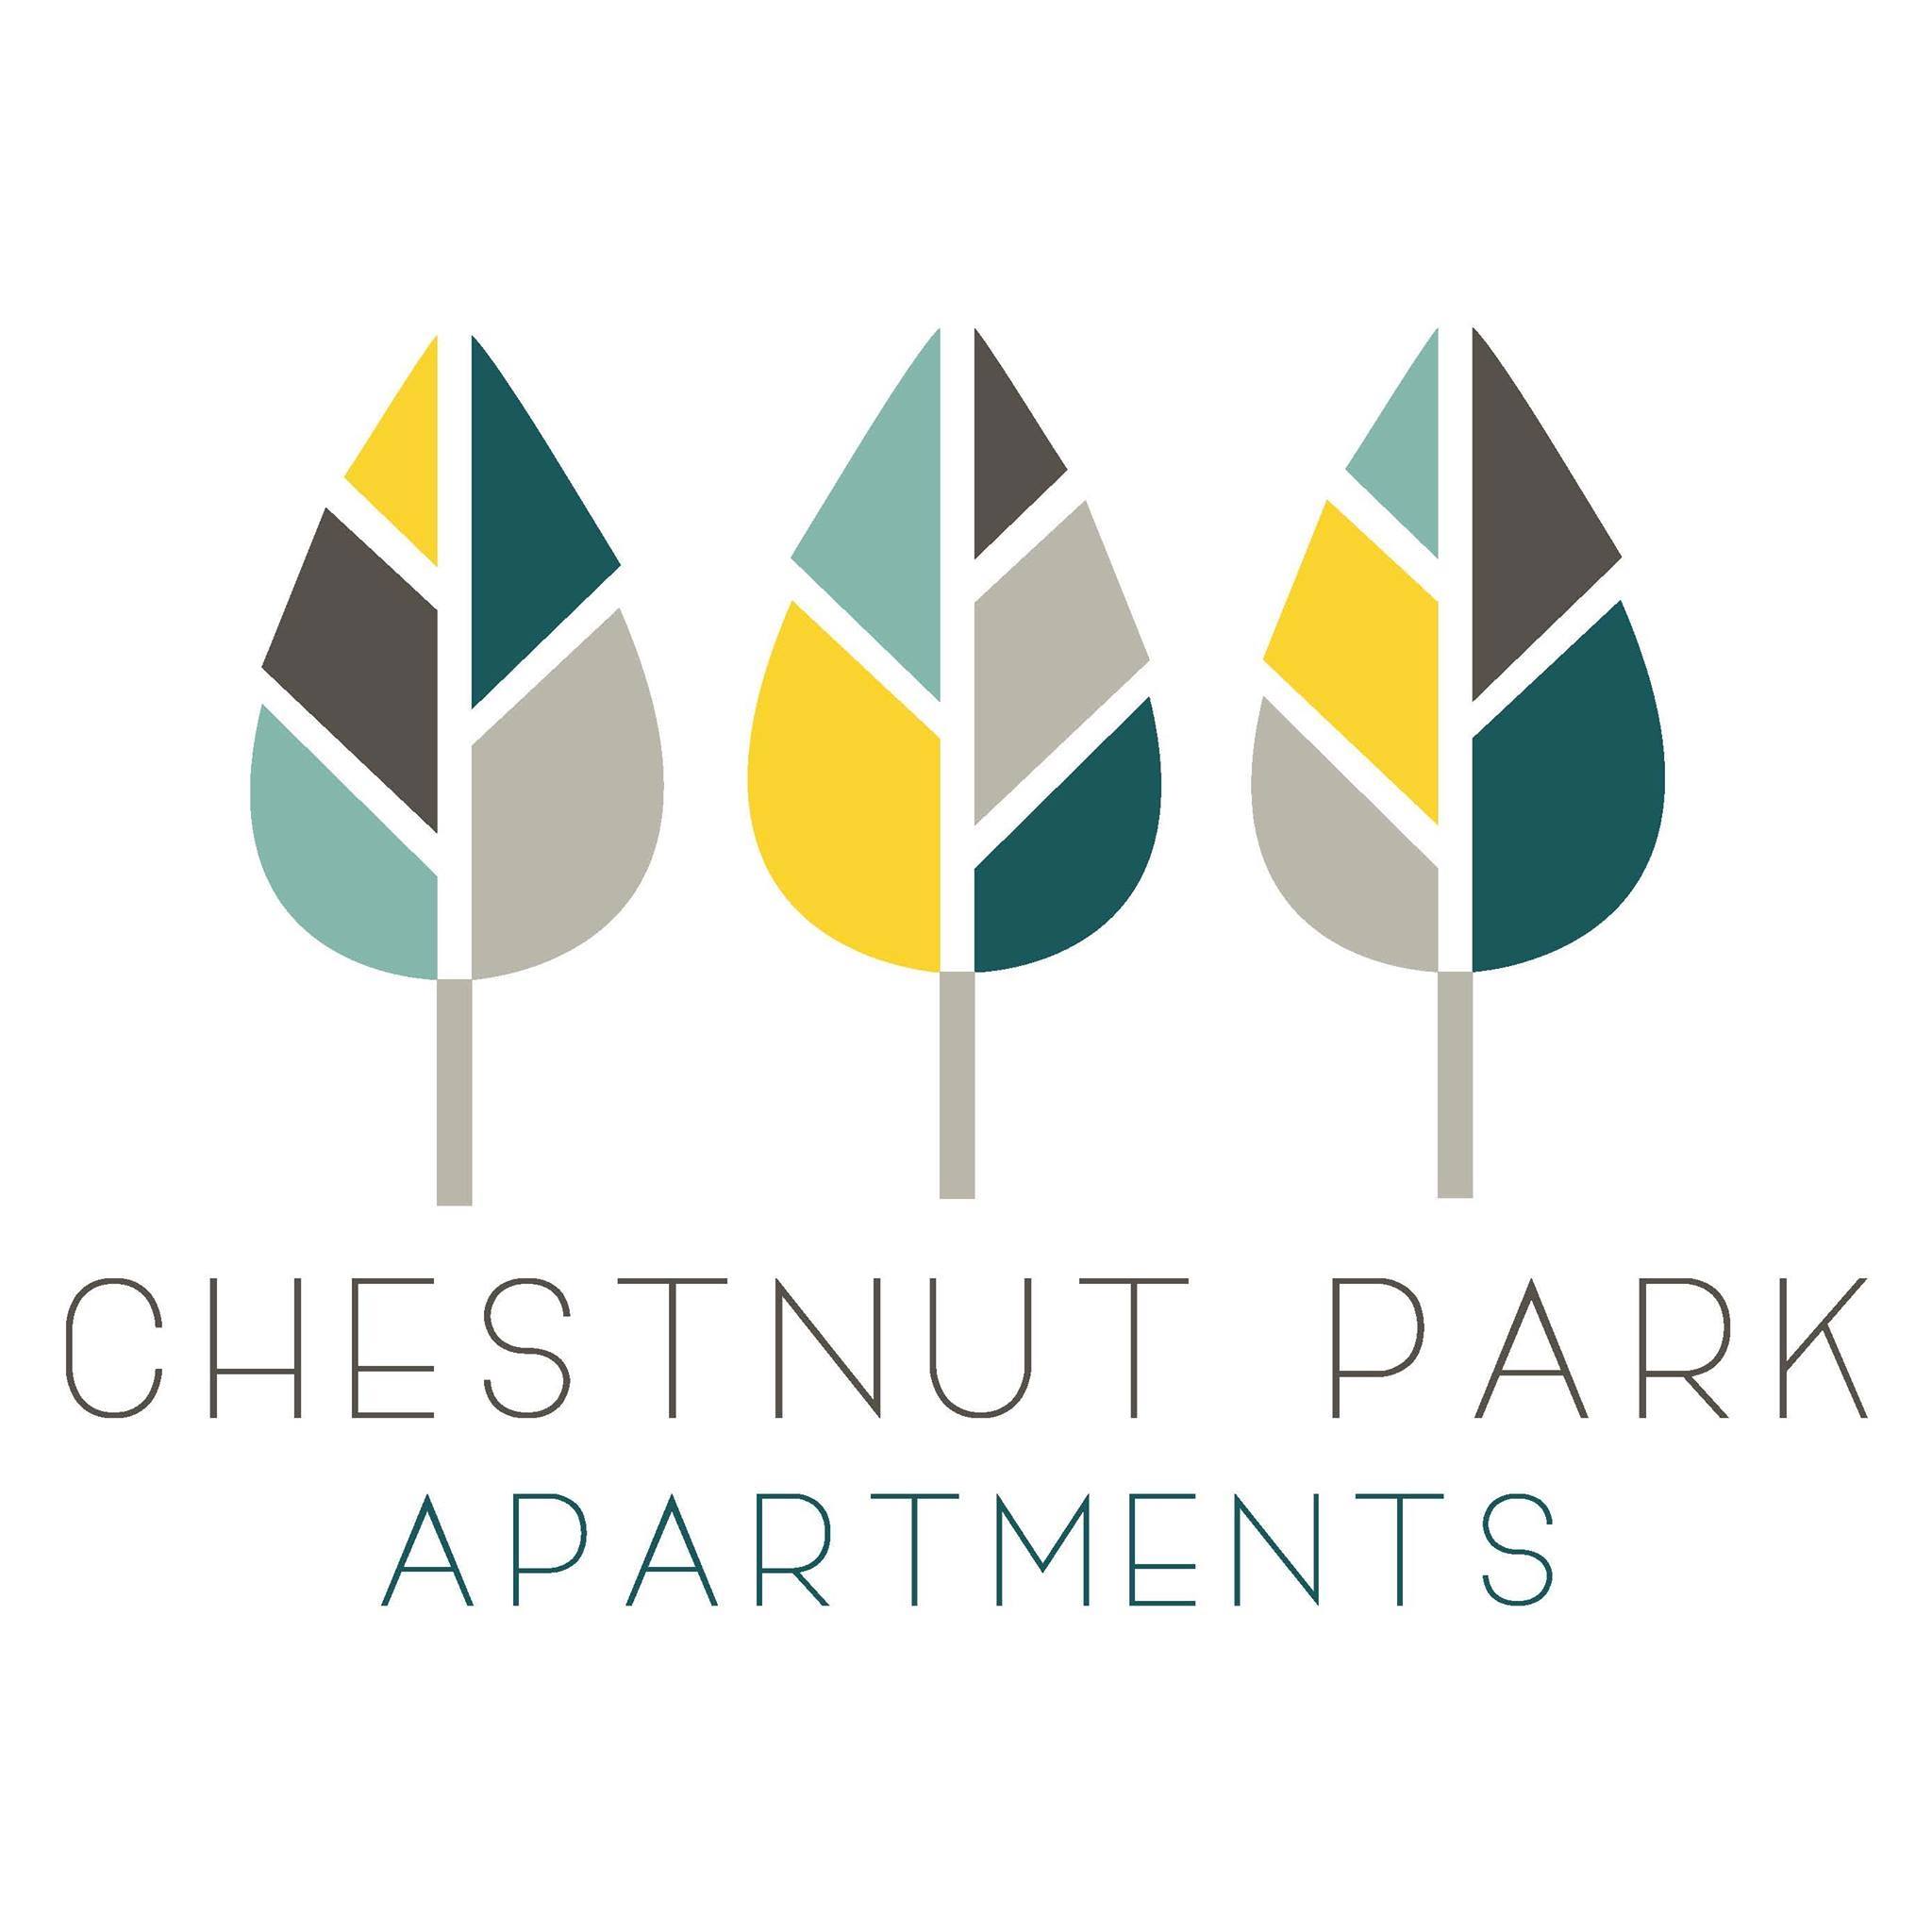 Chestnut Park Apartments